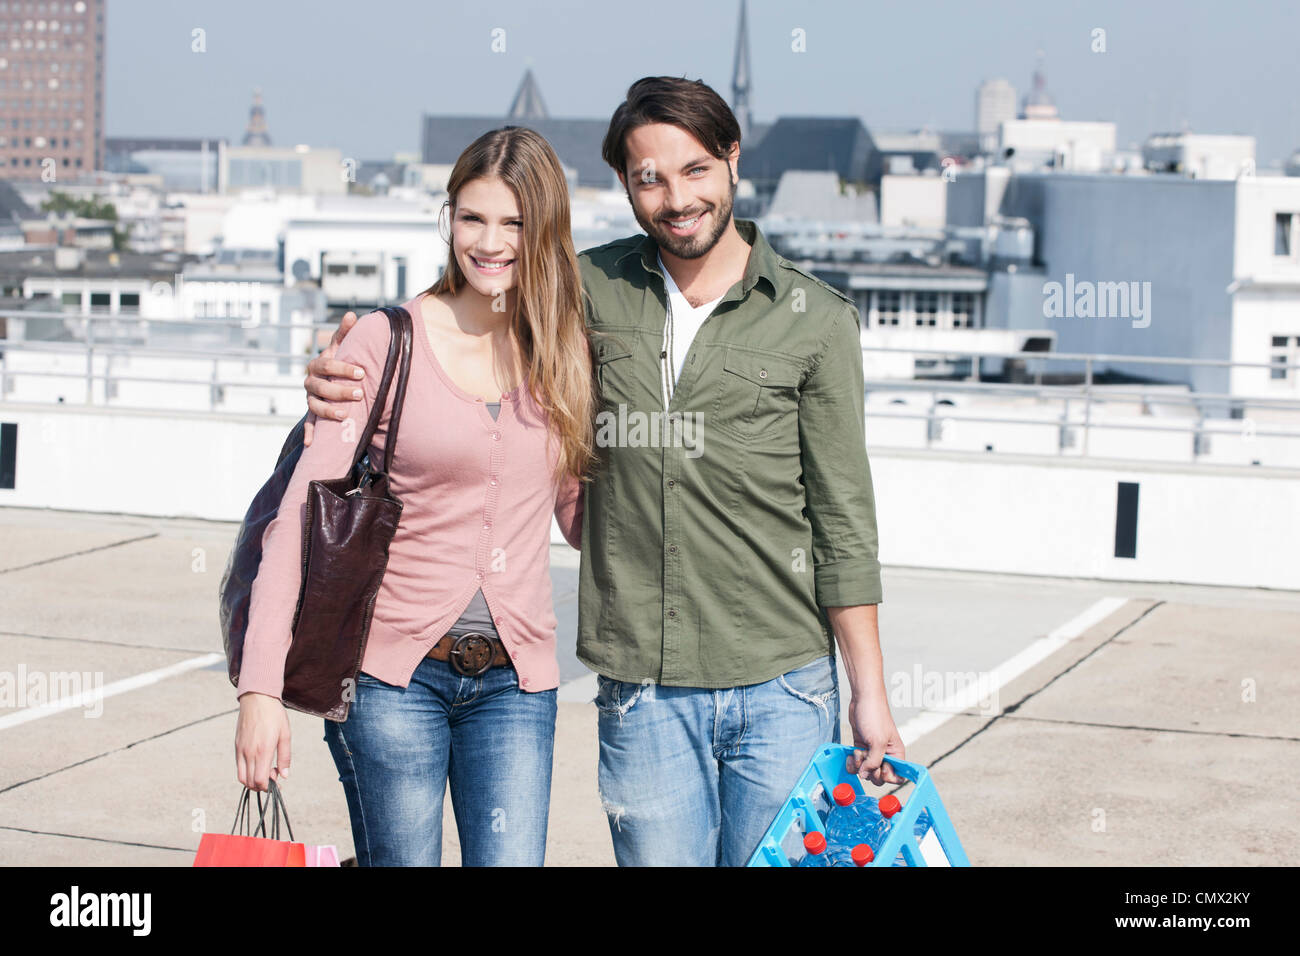 Deutschland, Köln, junges Paar mit Einkaufstüten, Lächeln, Porträt Stockfoto